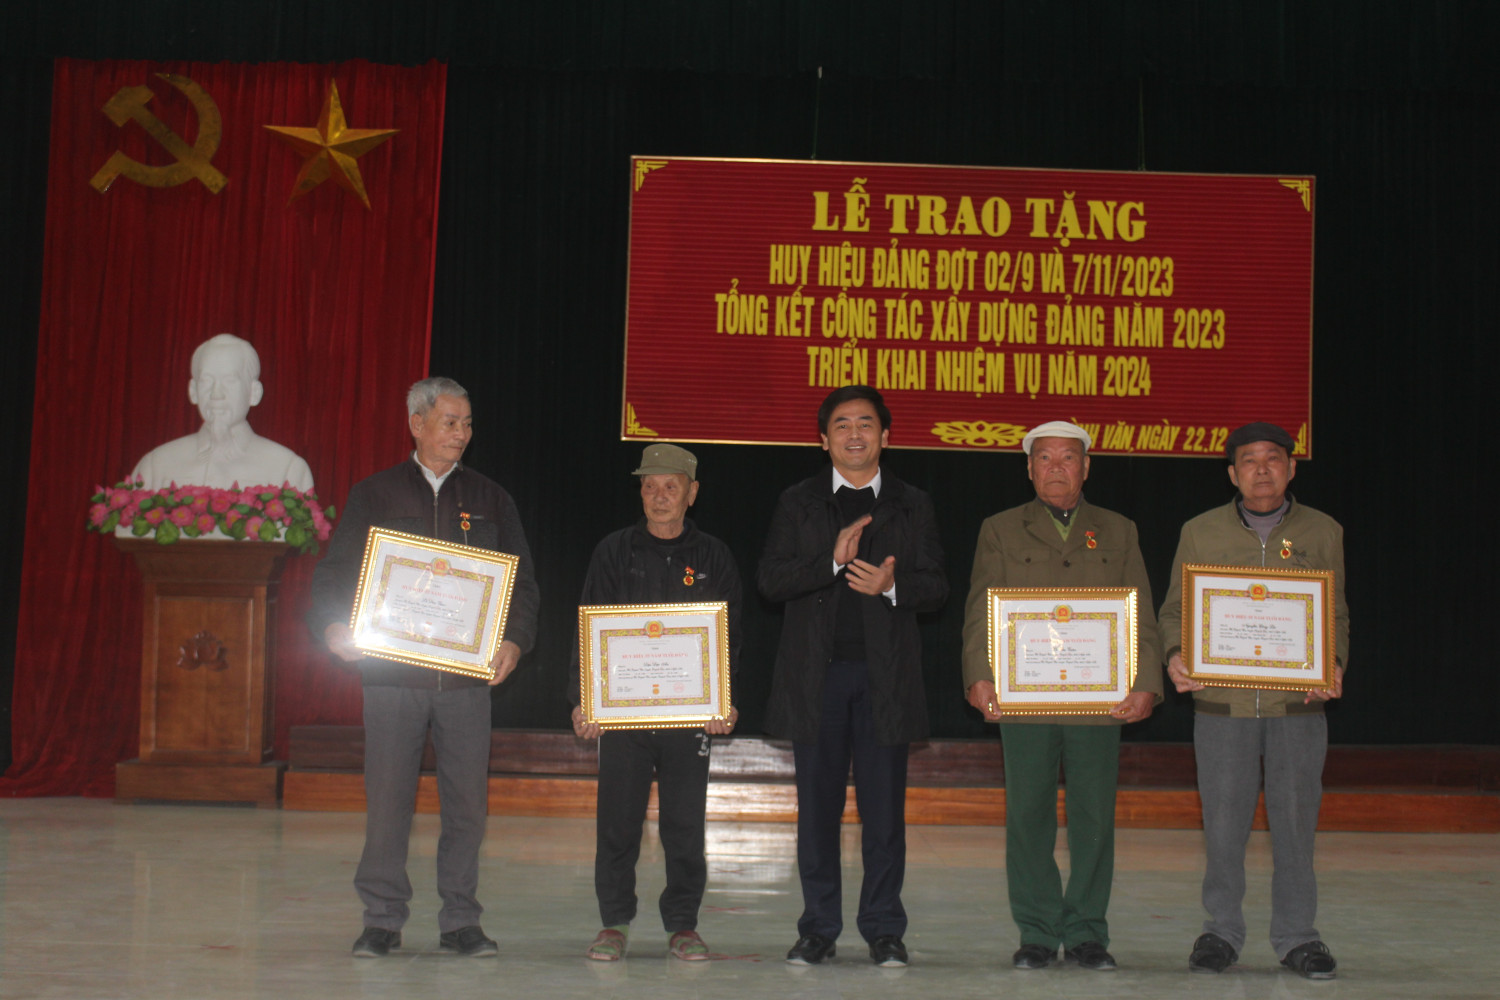 Đảng bộ xã Quỳnh Văn, huyện Quỳnh Lưu tổ chức Lễ trao tặng Huy hiệu Đảng đợt 2/9 và 7/11/2023 và tổng kết công tác xây dựng Đảng năm 2023, phương hướng, nhiệm vụ năm 2024